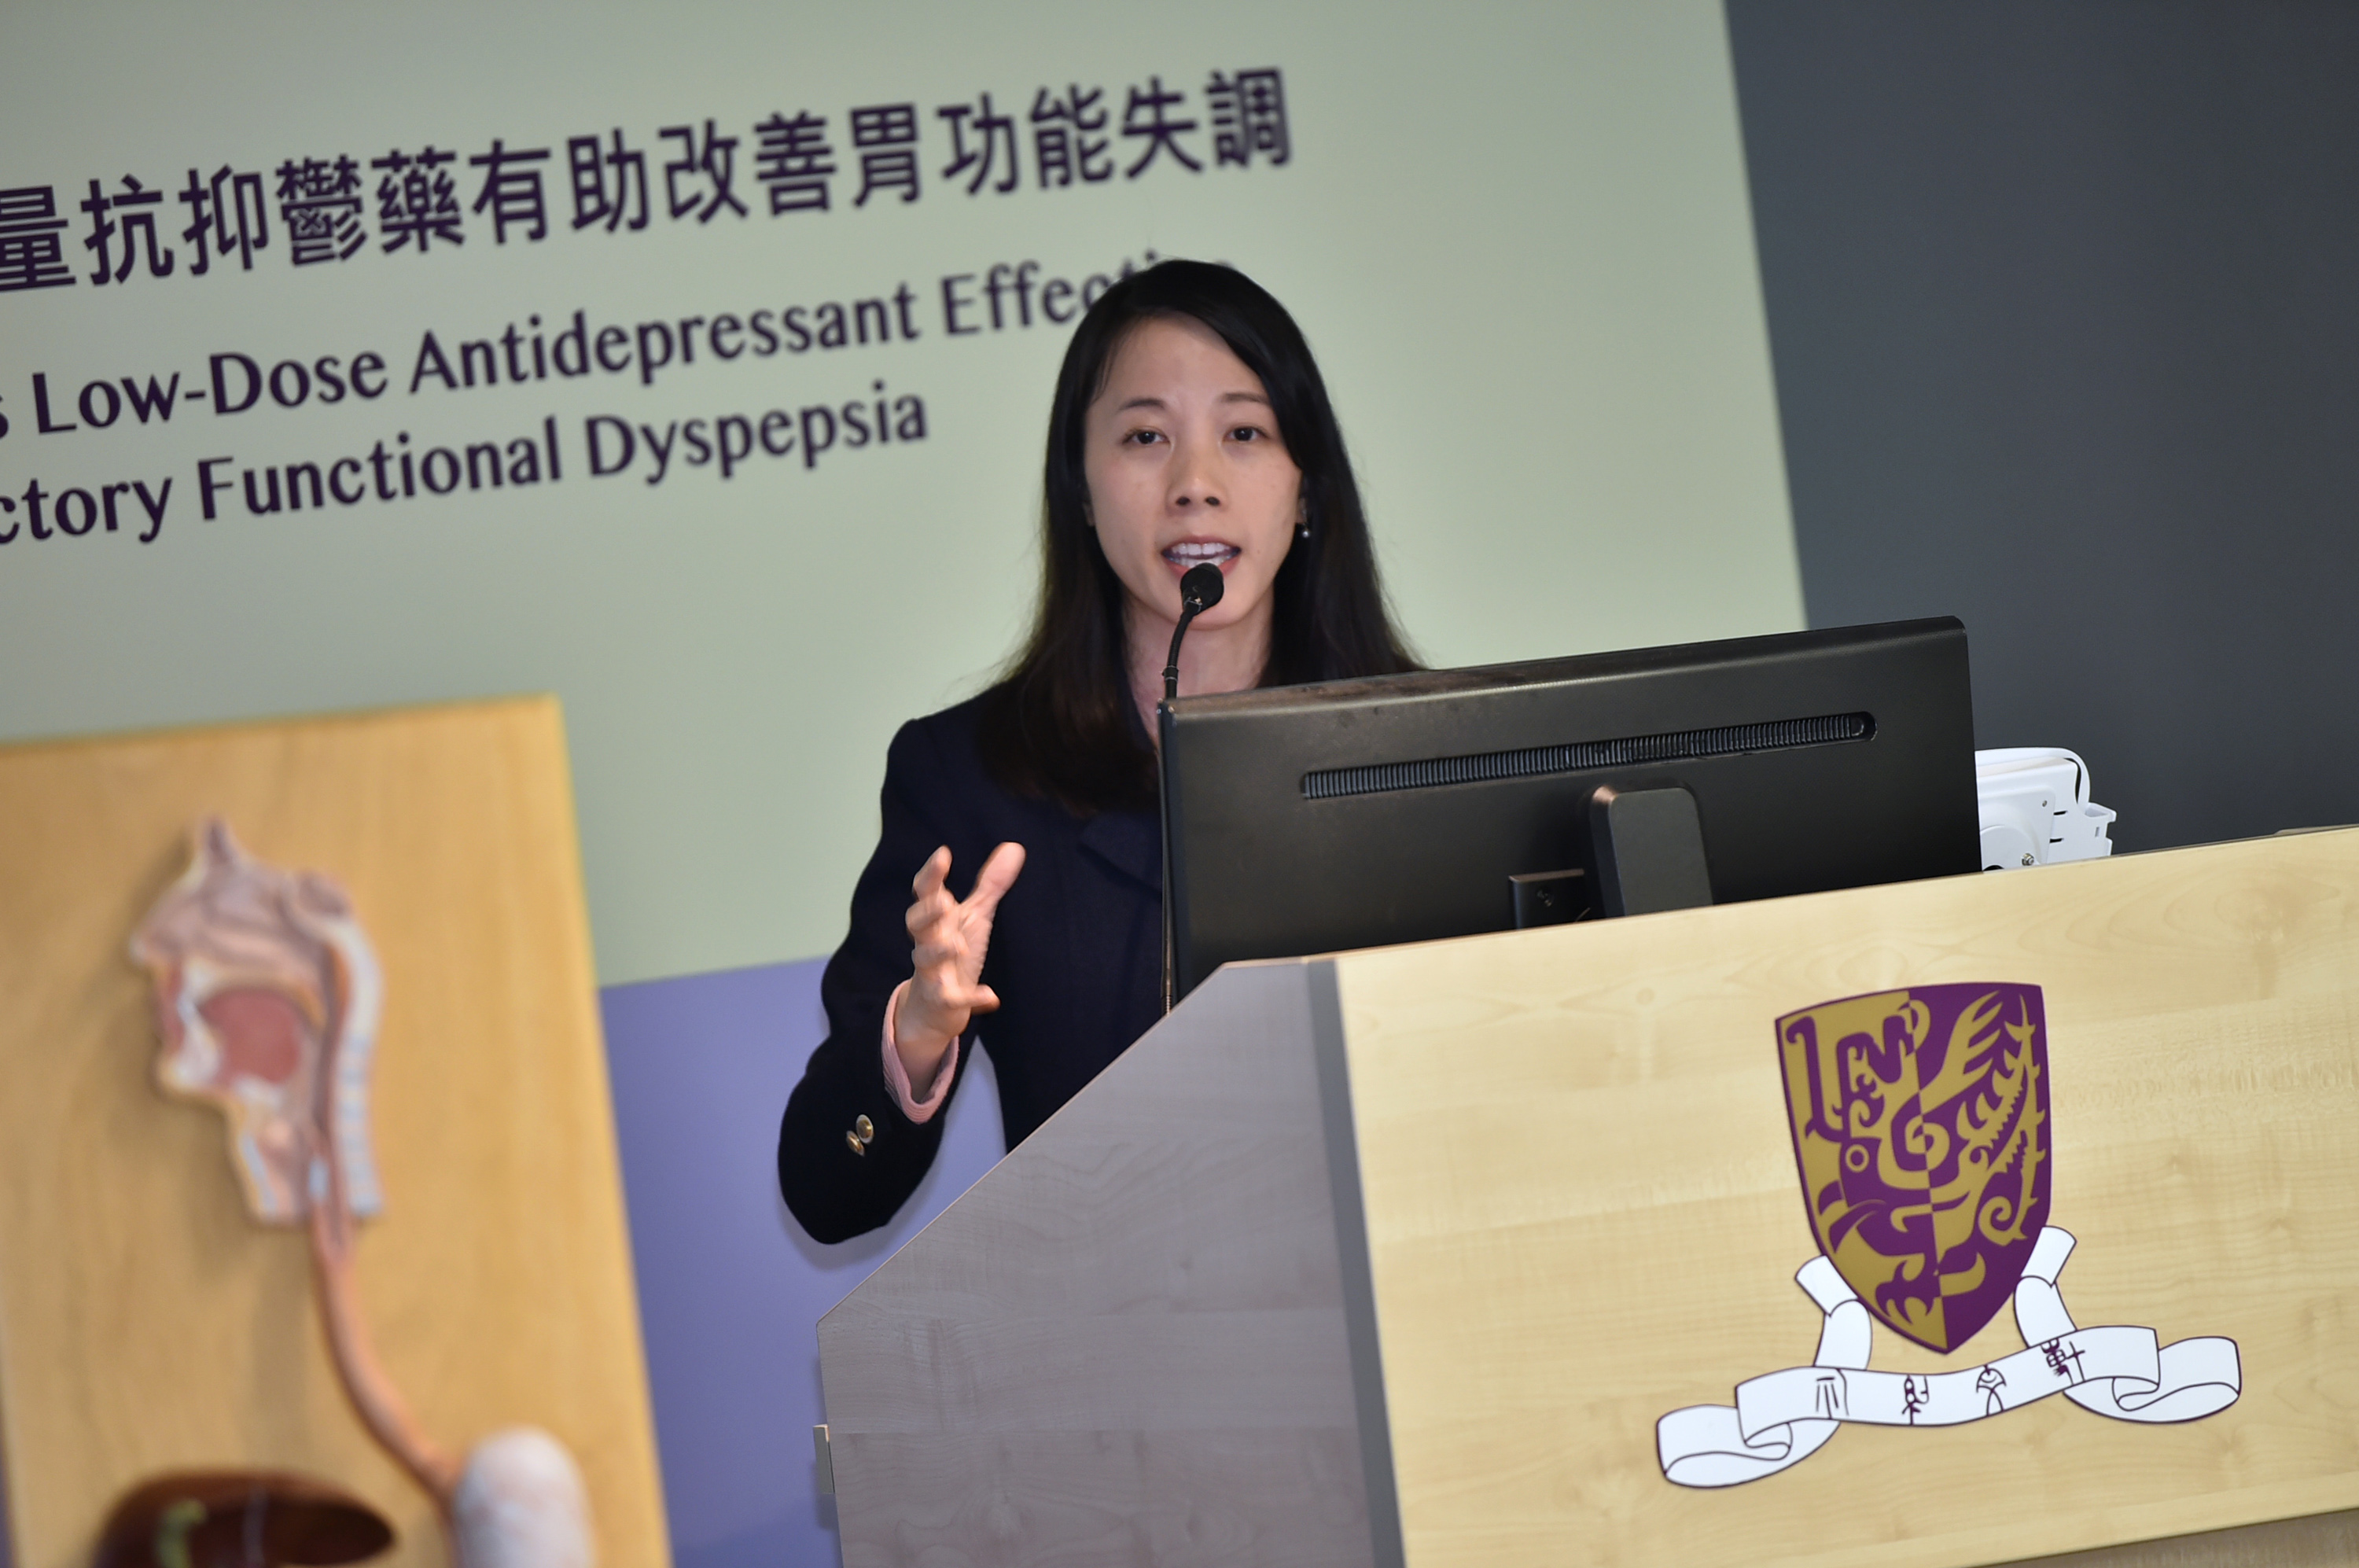 陈雅文表示，普遍患有胃功能失调的病人都是“焦虑底”，呼吁大众多关注情绪健康。